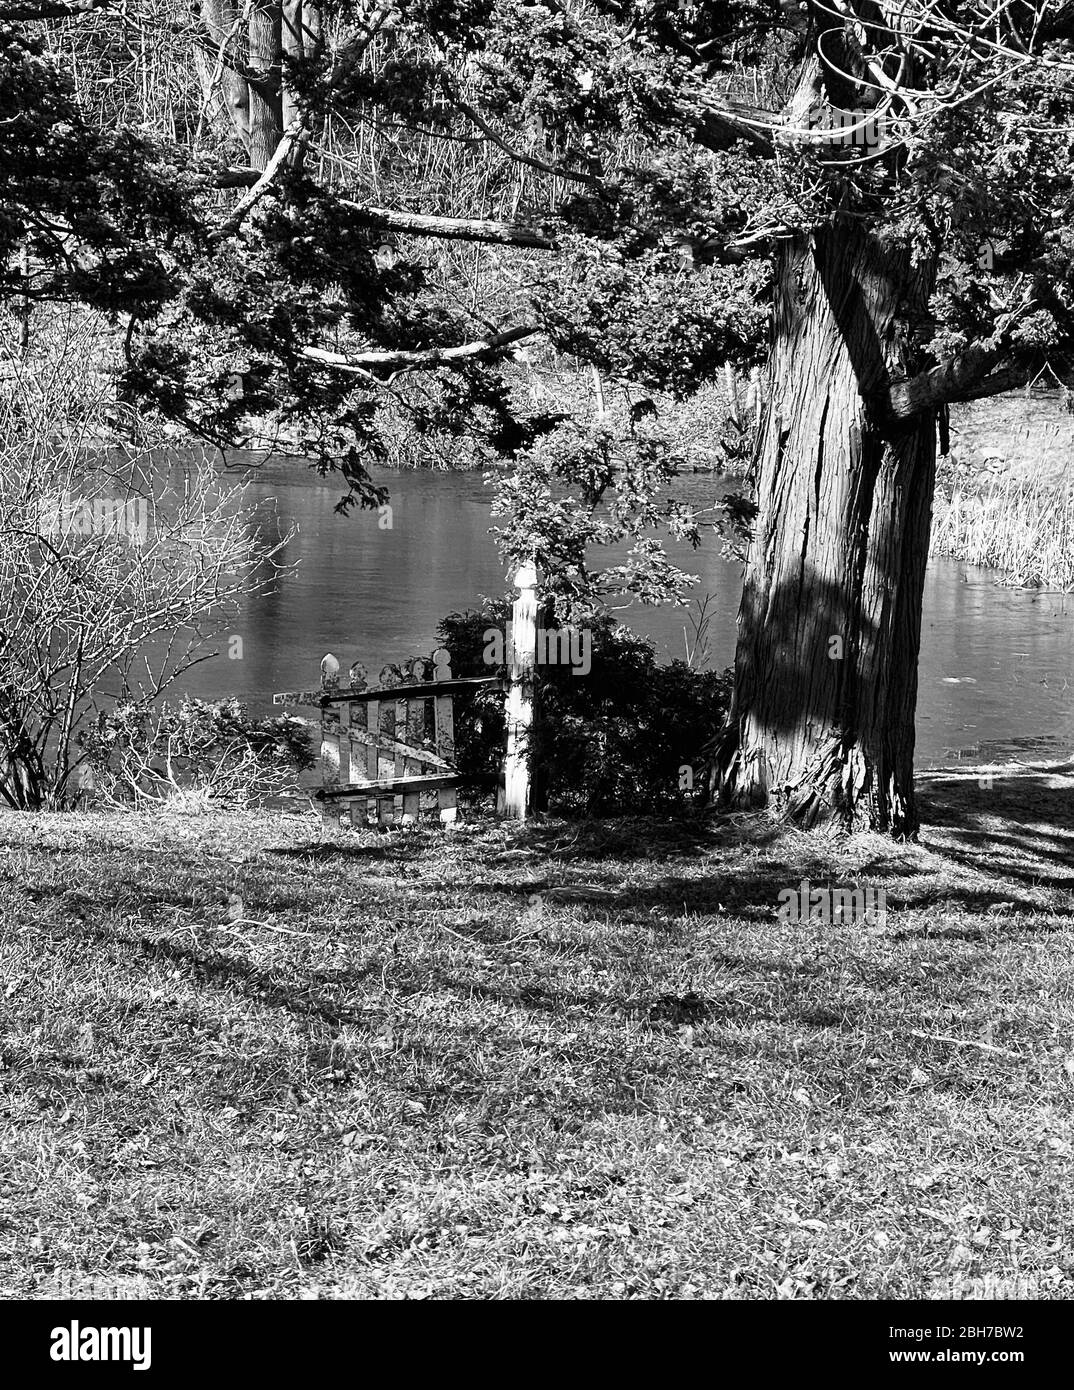 Capture en noir et blanc de la petite porte sur un étang. Banque D'Images